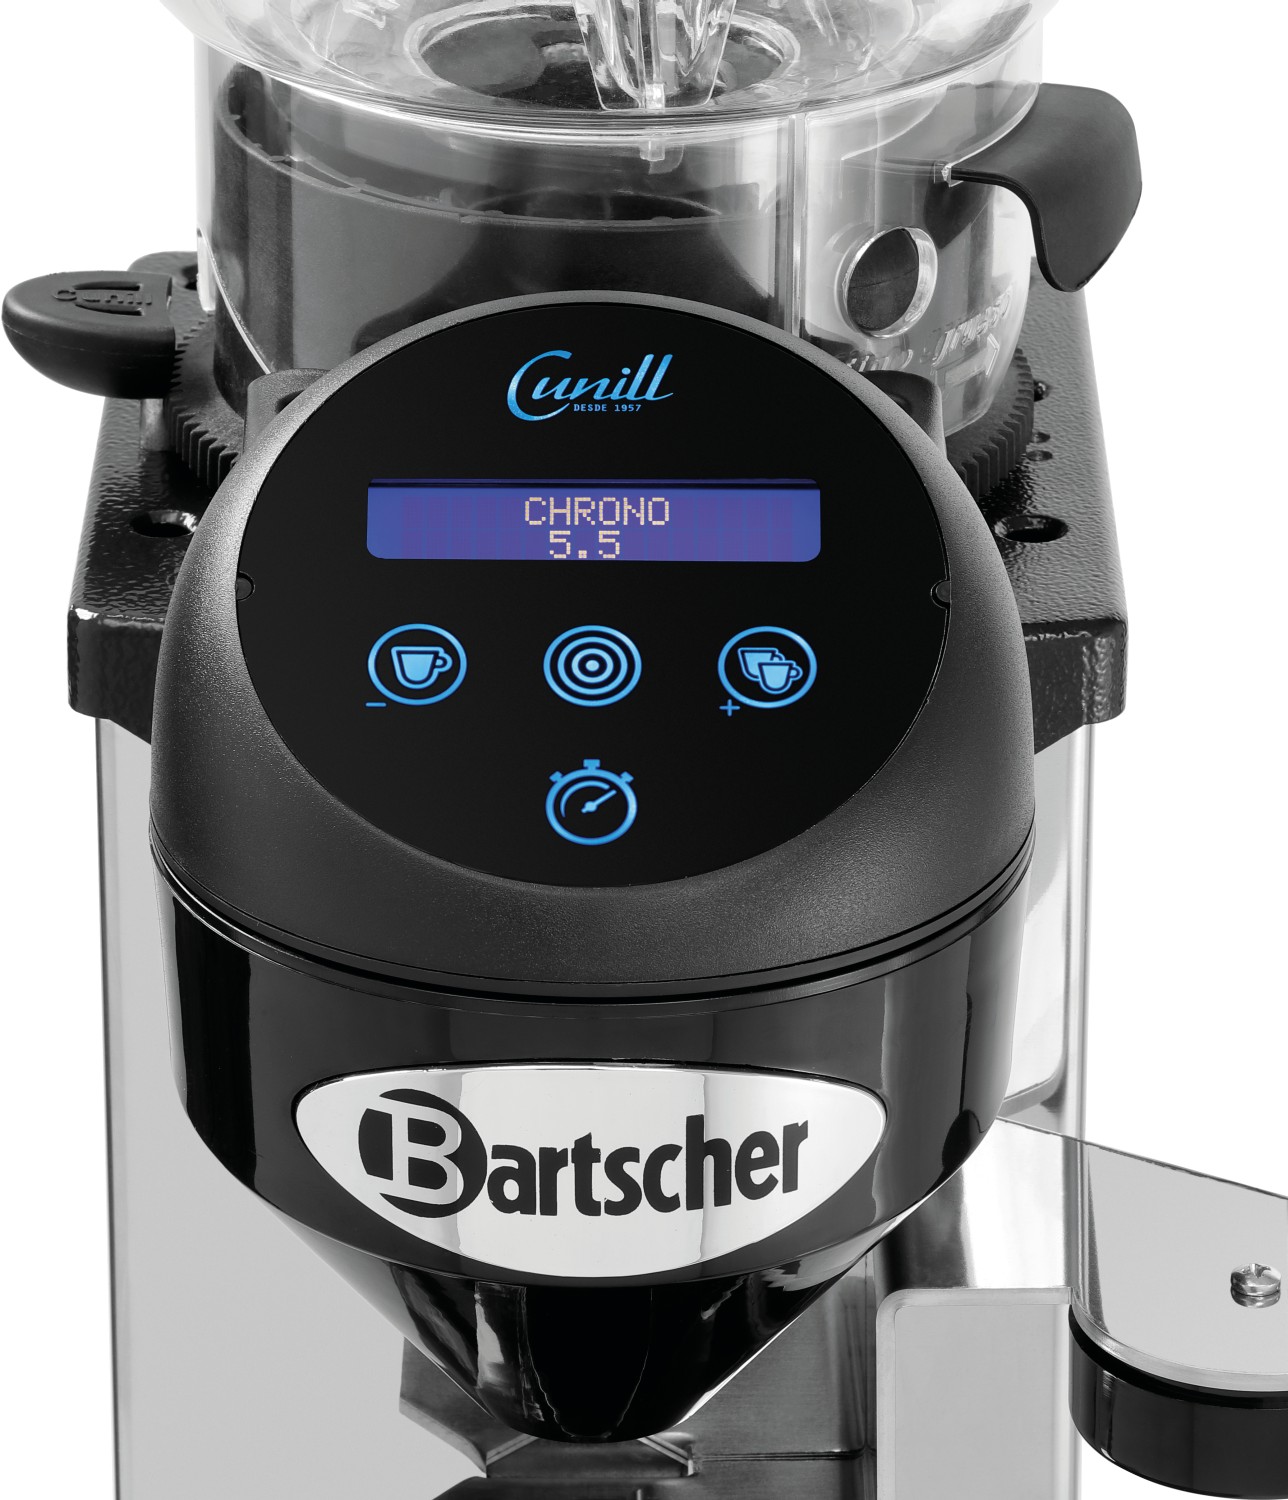  Bartscher Coffee grinder Tauro Digital 